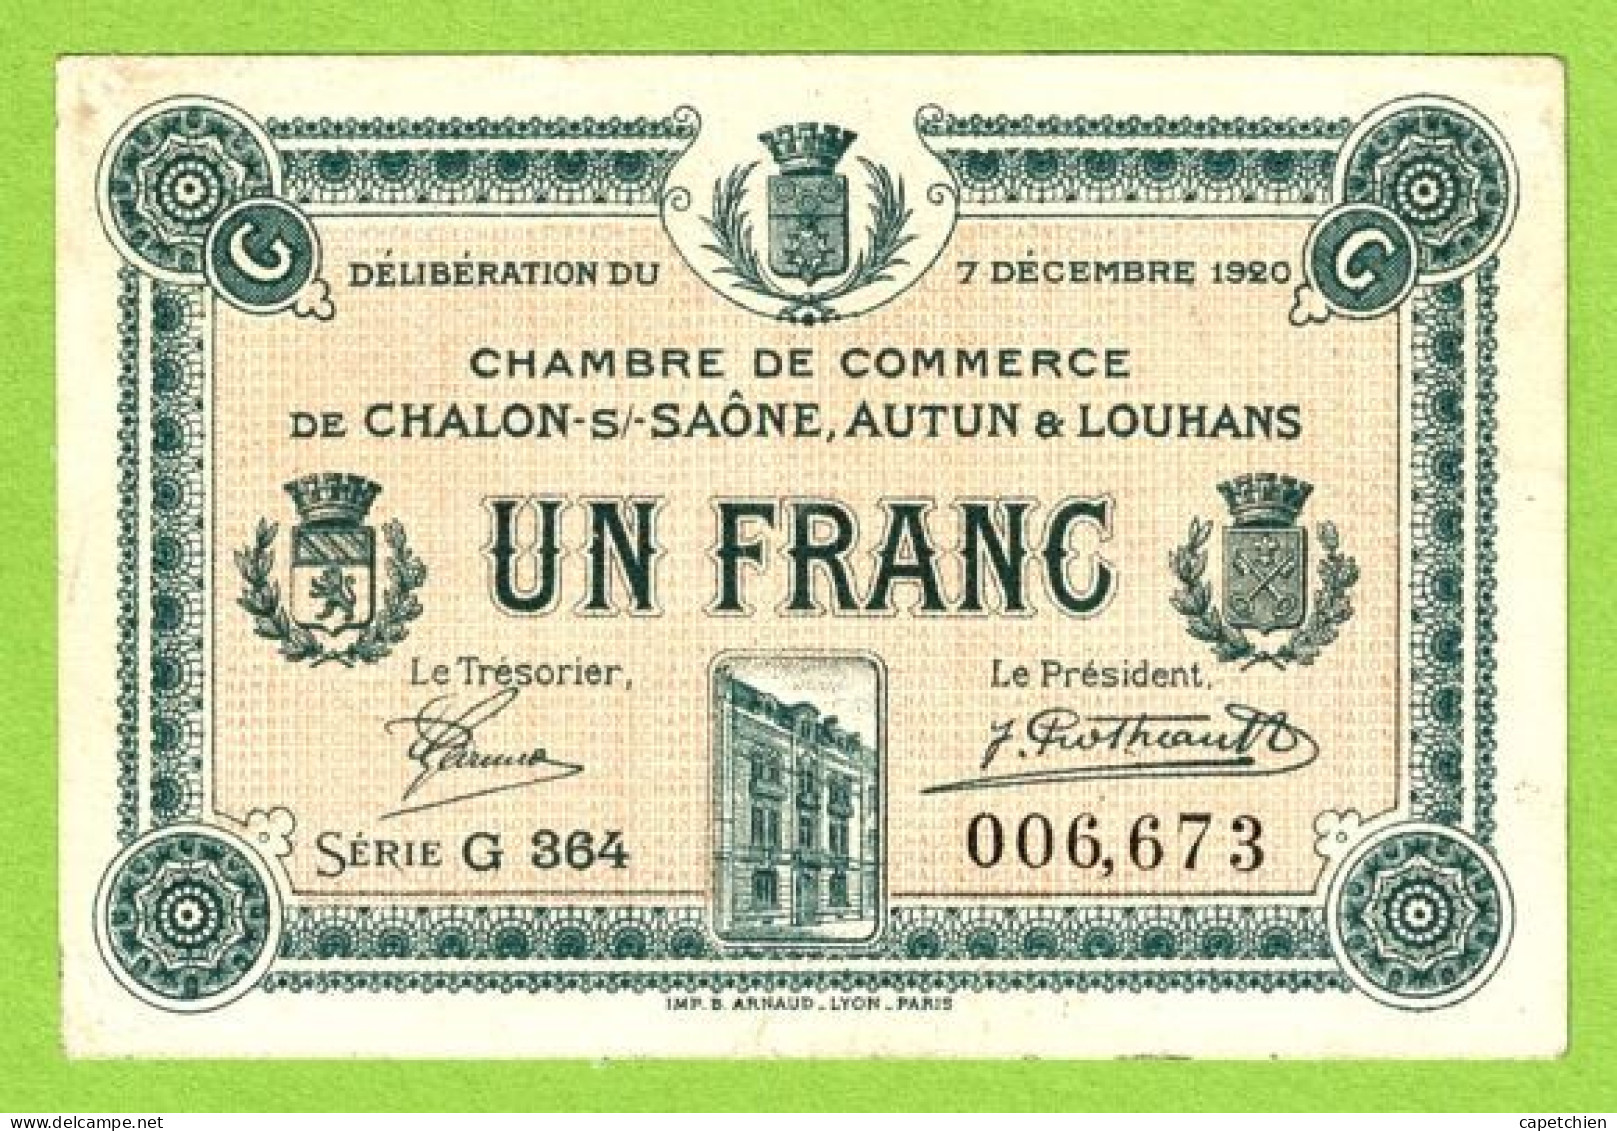 FRANCE / CHAMBRE De COMMERCE / CHALON SUE SAÔNE/ AUTUN / LOUHANS 1 FRANC / 7 DECEMBRE 1920 / 006673 / SERIE G 364 - Chamber Of Commerce